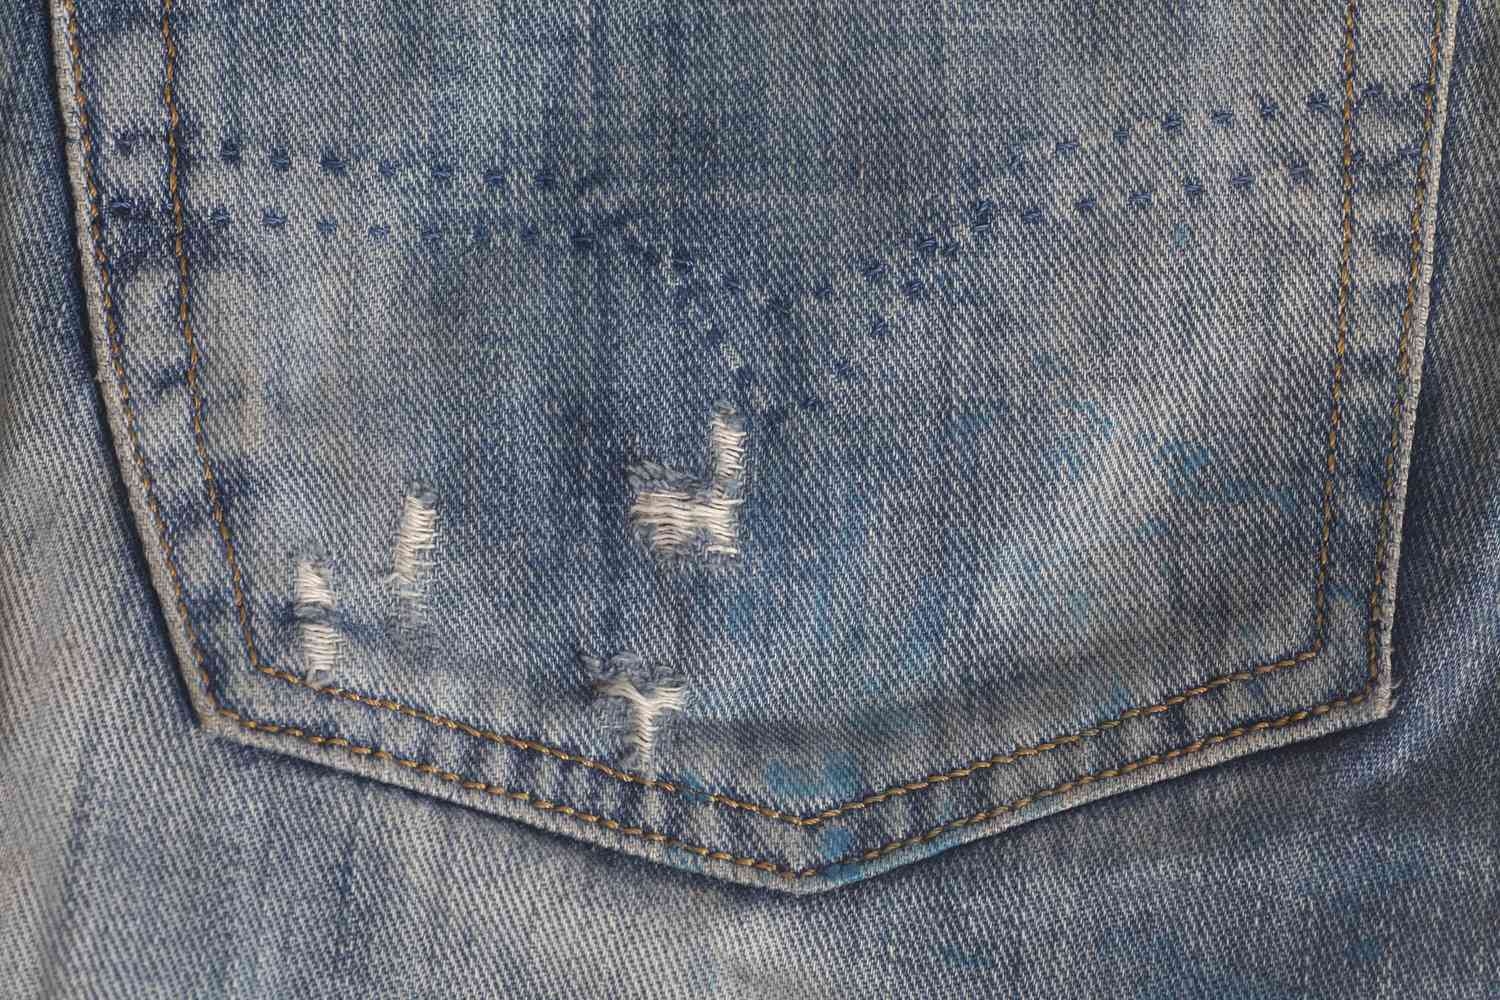 Jeans Tasche Denim Textur Hintergrund